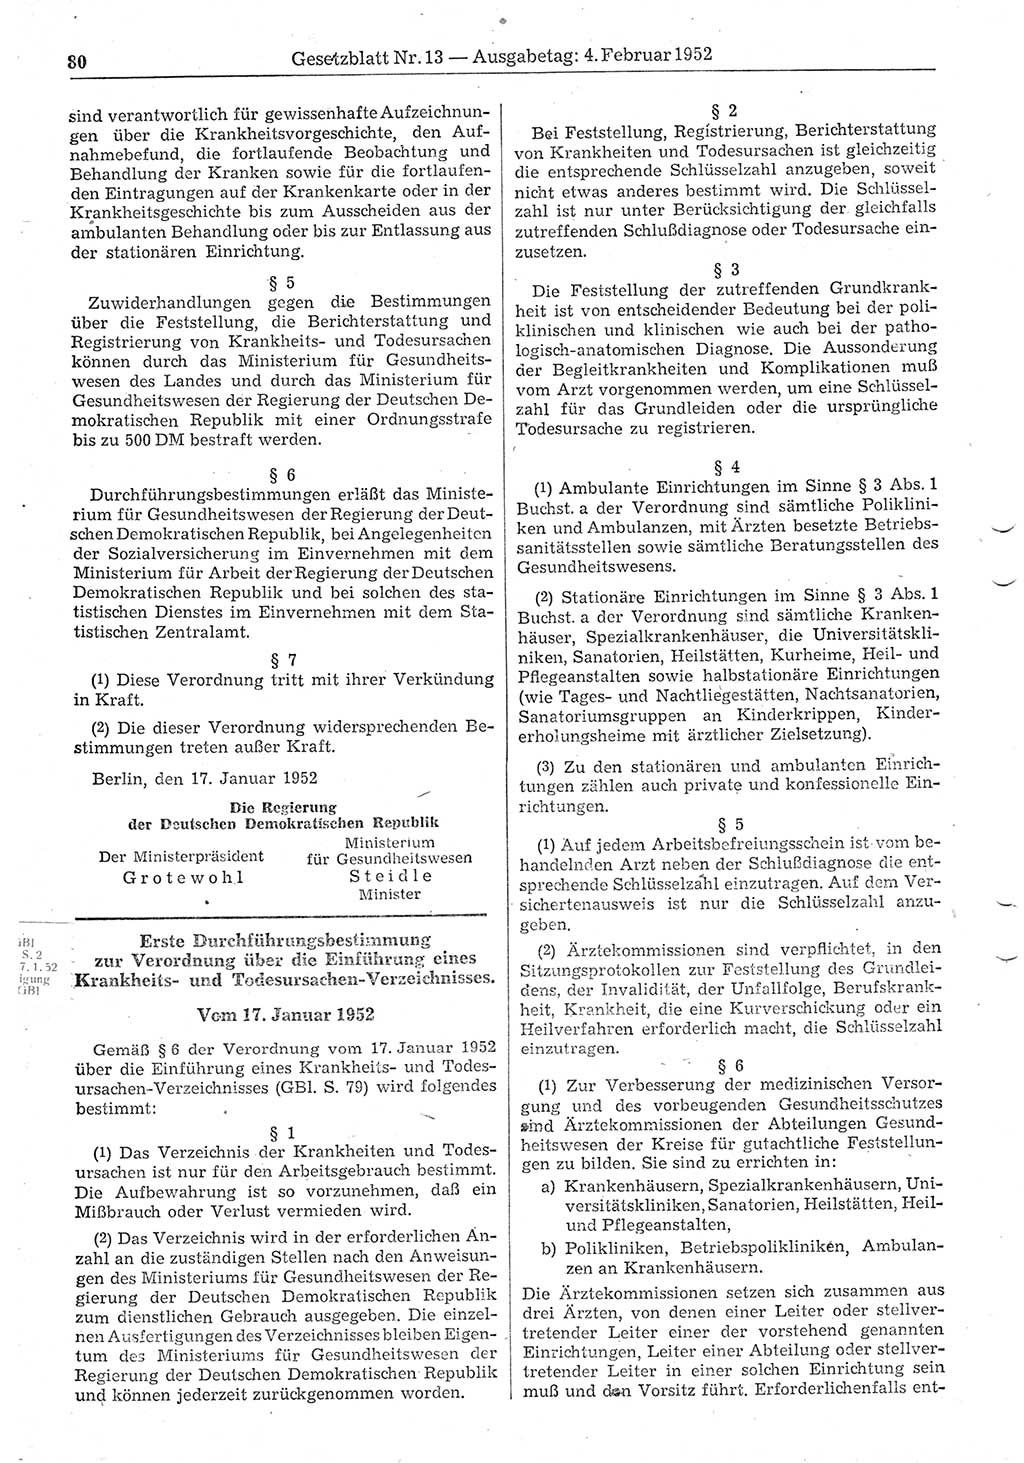 Gesetzblatt (GBl.) der Deutschen Demokratischen Republik (DDR) 1952, Seite 80 (GBl. DDR 1952, S. 80)